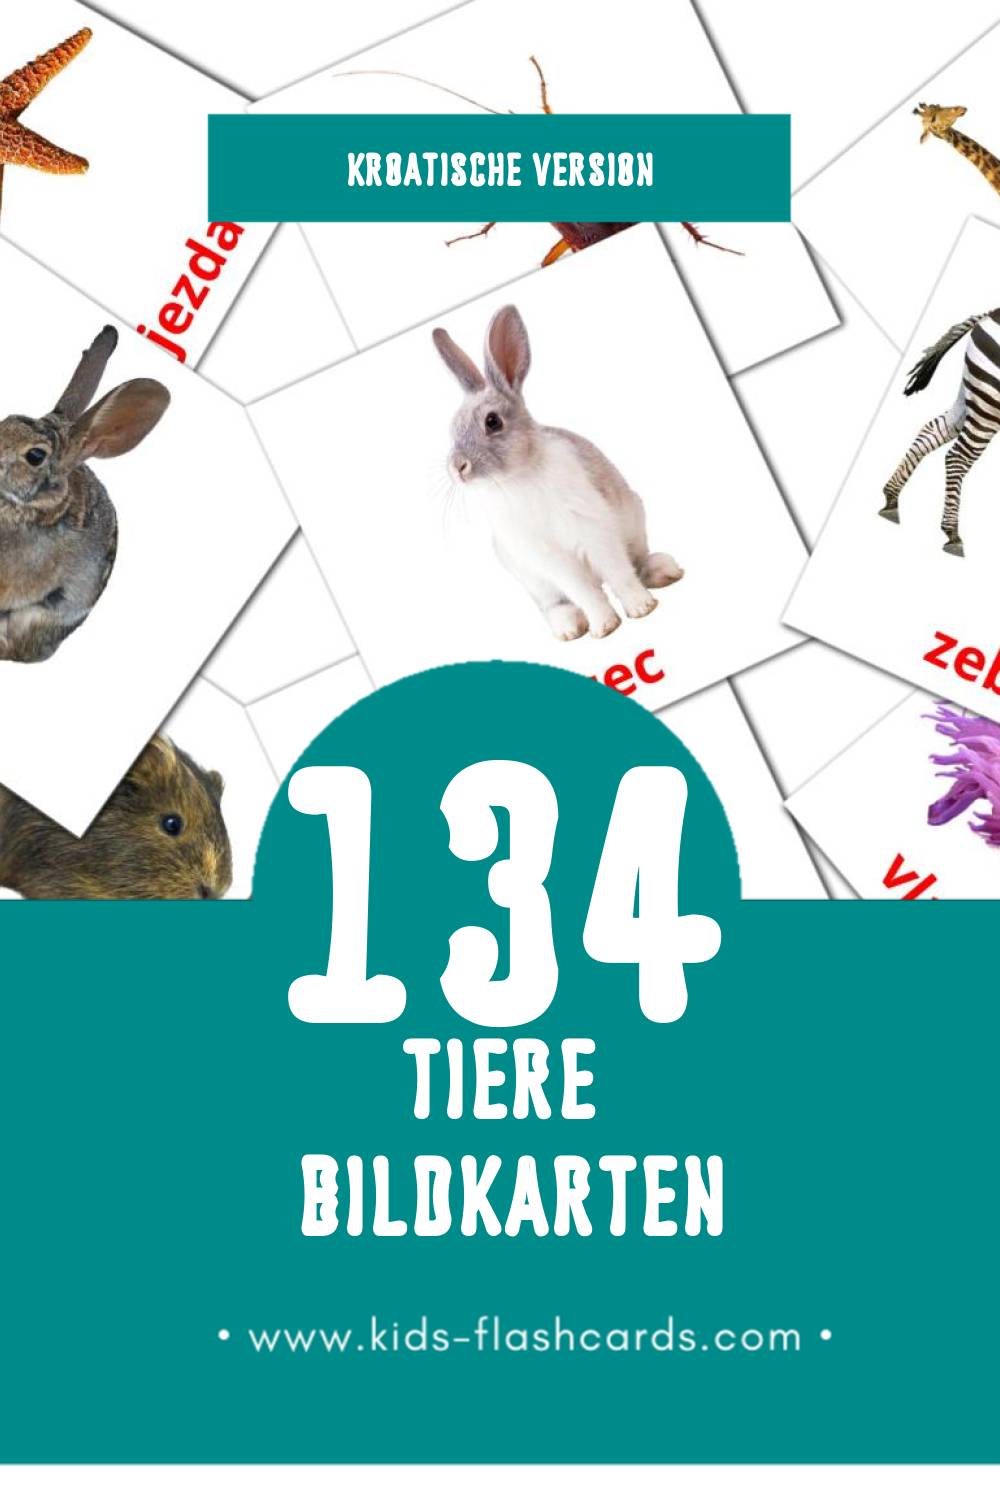 Visual Životinje Flashcards für Kleinkinder (134 Karten in Kroatisch)